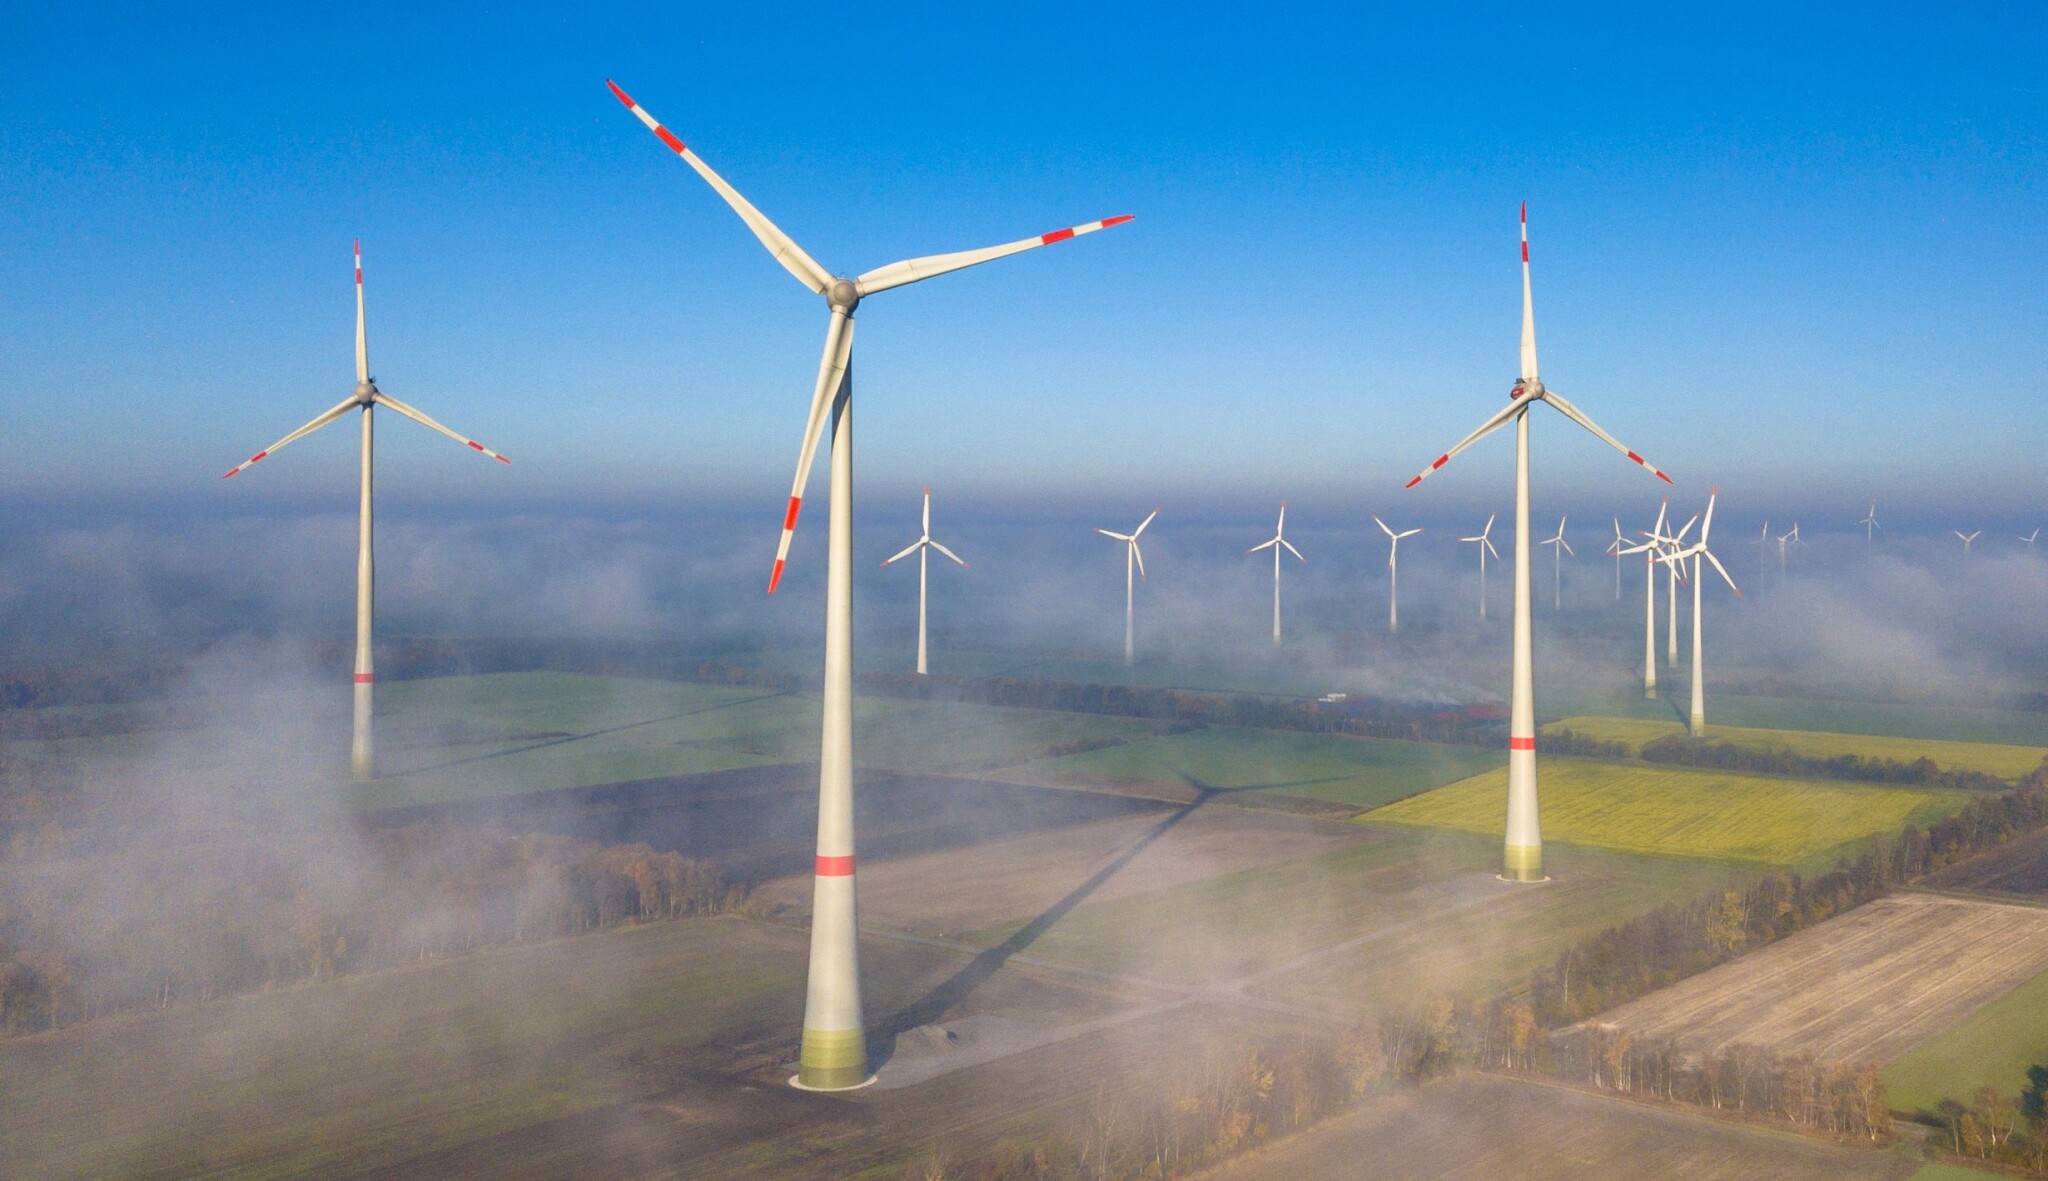 Deal za sedm miliard. Green Horizon Renewables miliardáře Krska prodal své větrné parky ve Finsku